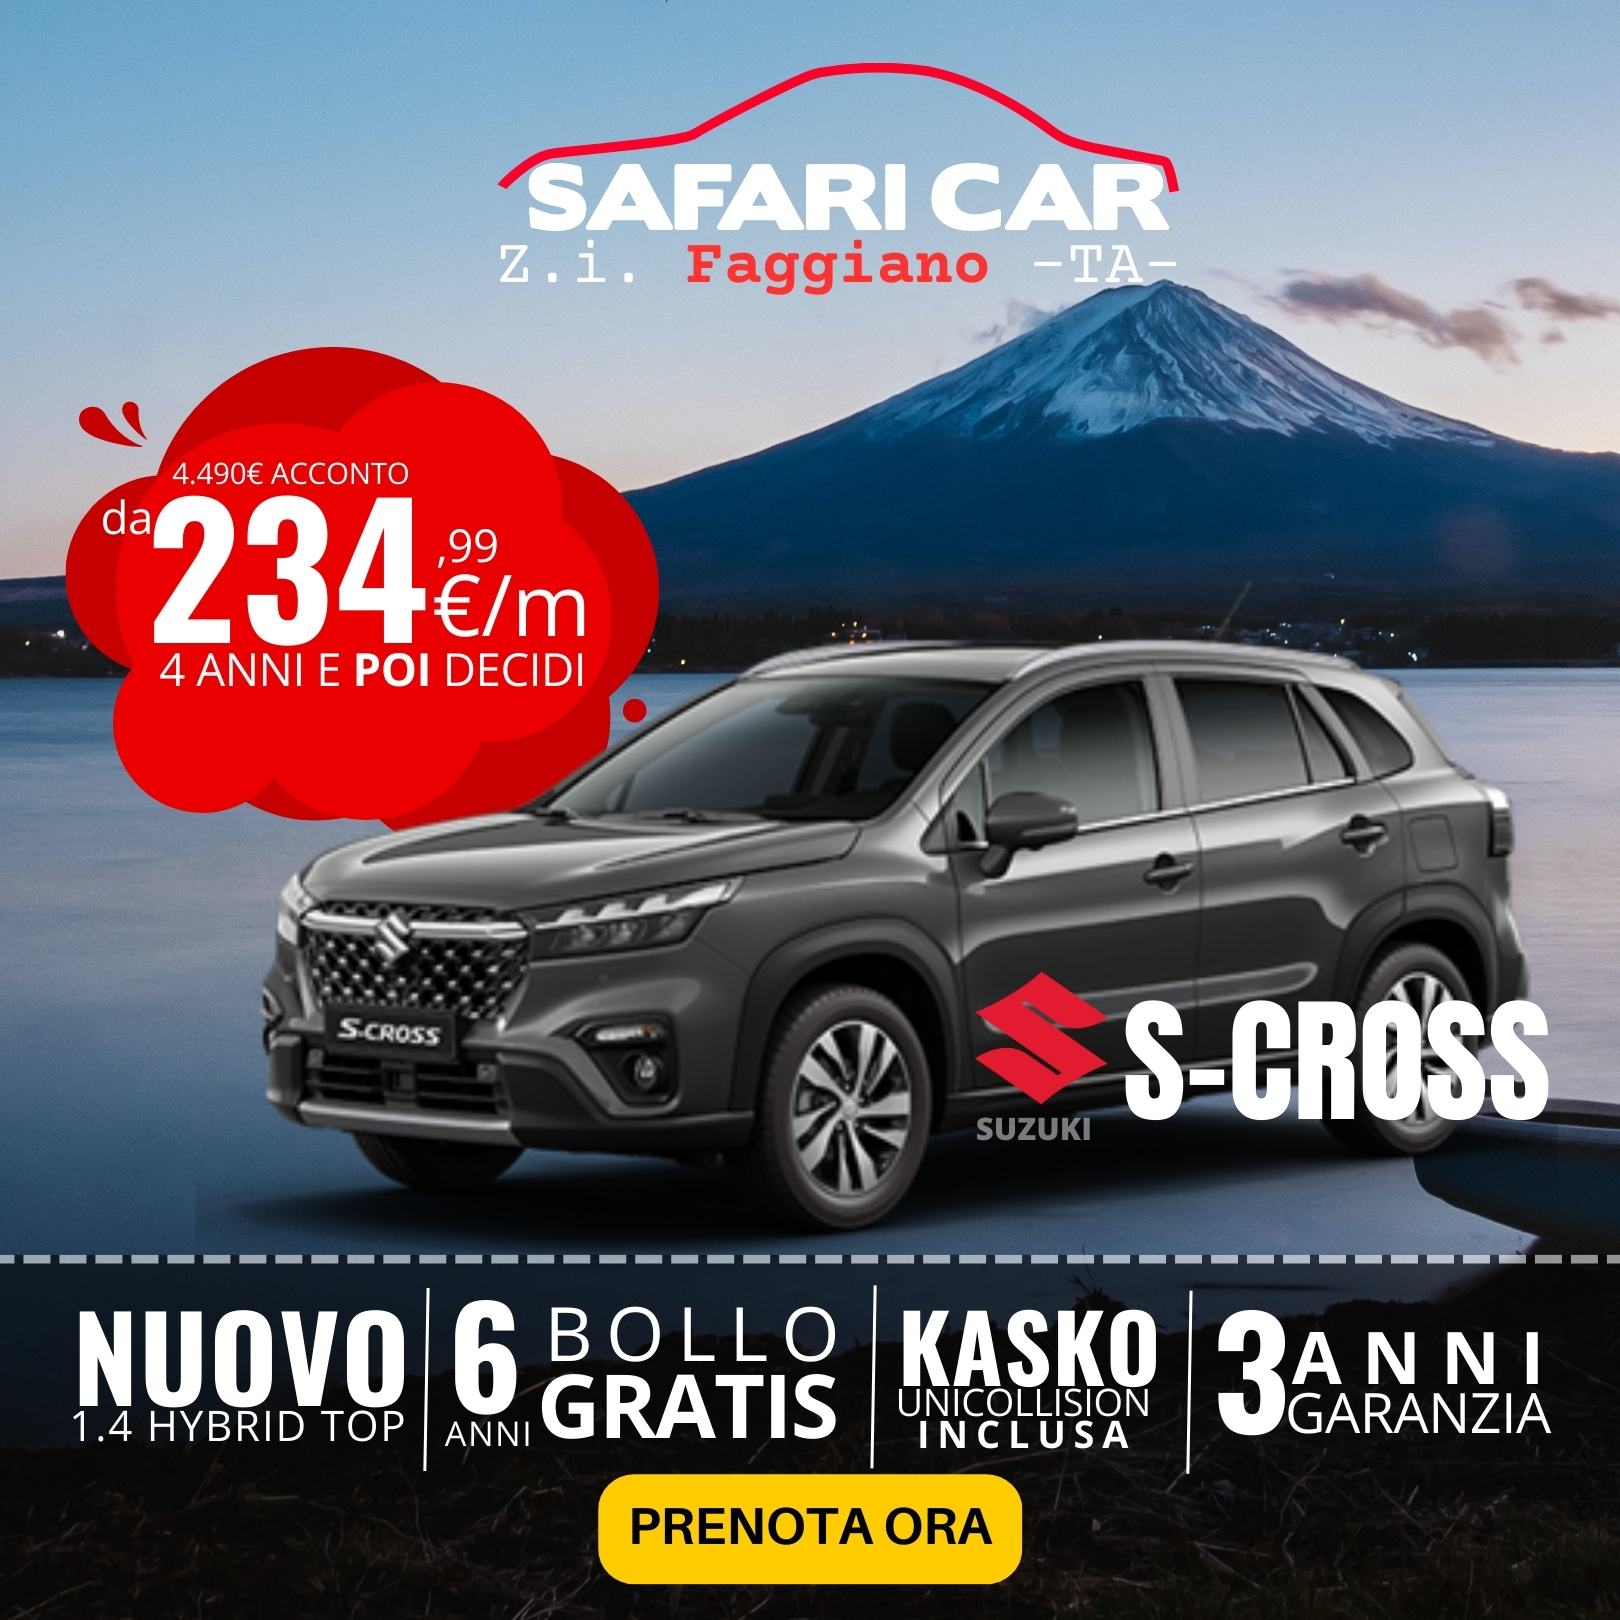 Offerta Suzuki S-Cross Taranto